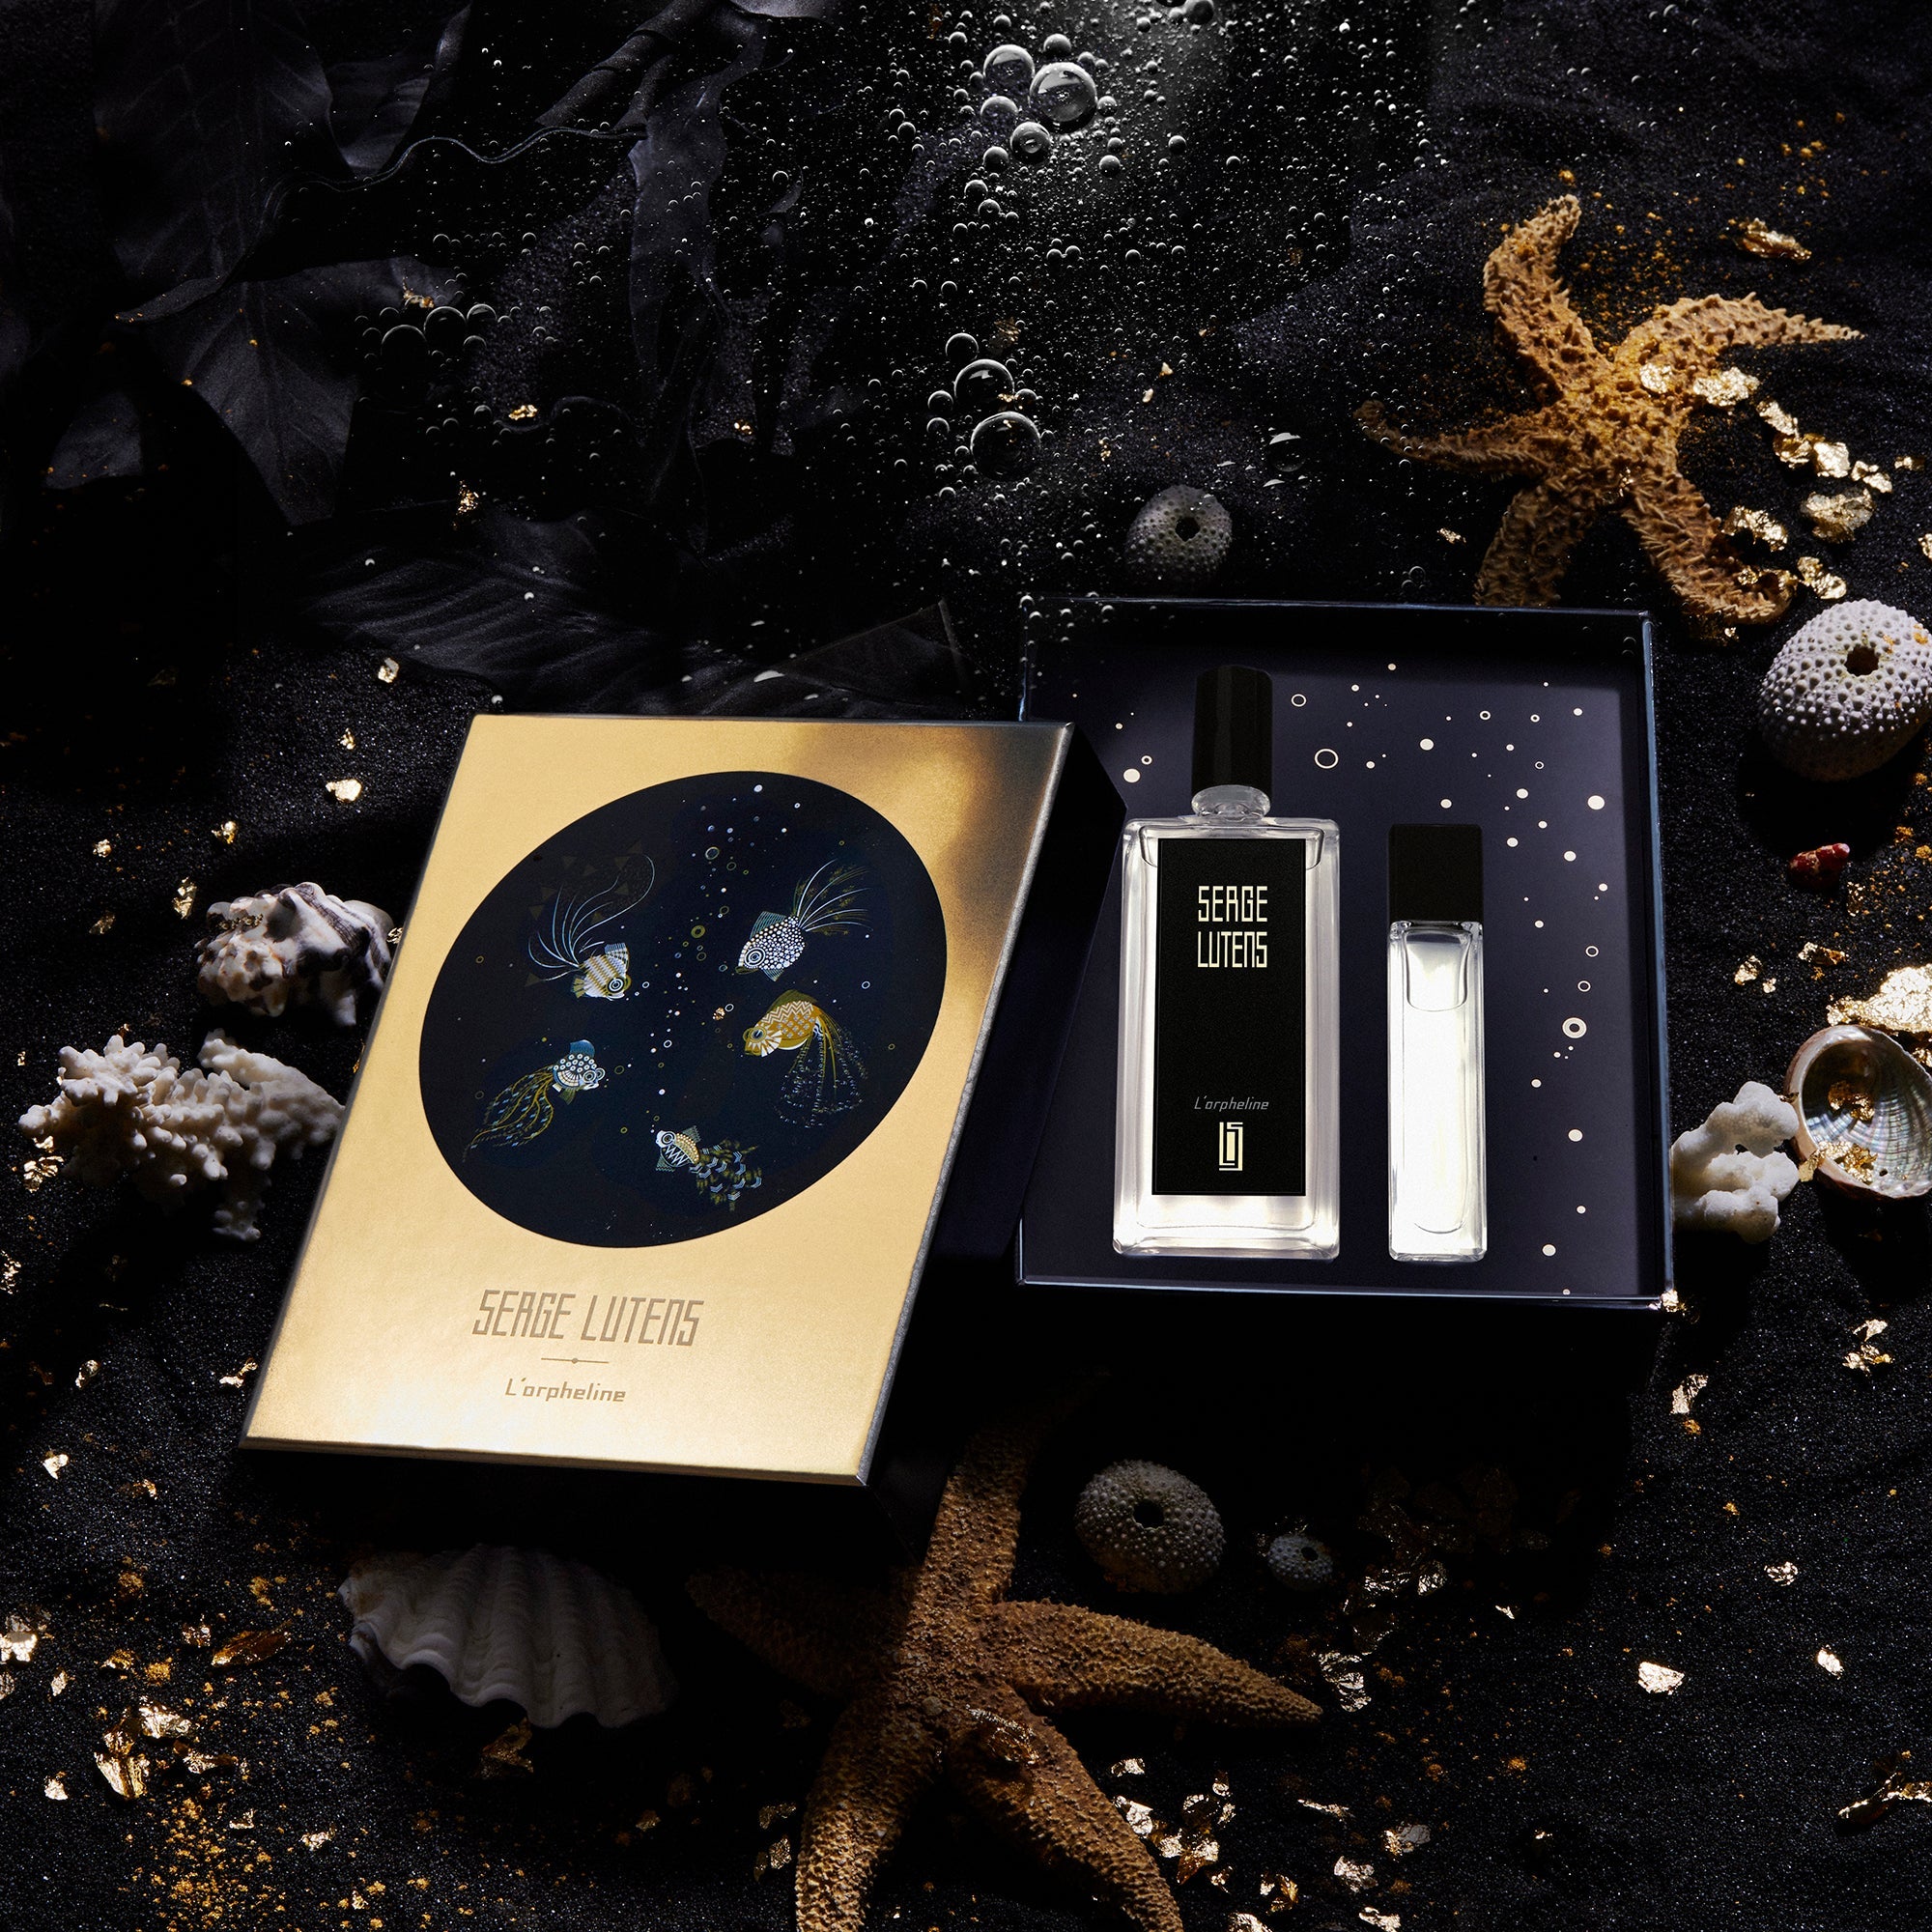 L'Orpheline Limited Edition - Eau de Parfum 50 ml | Serge Lutens 